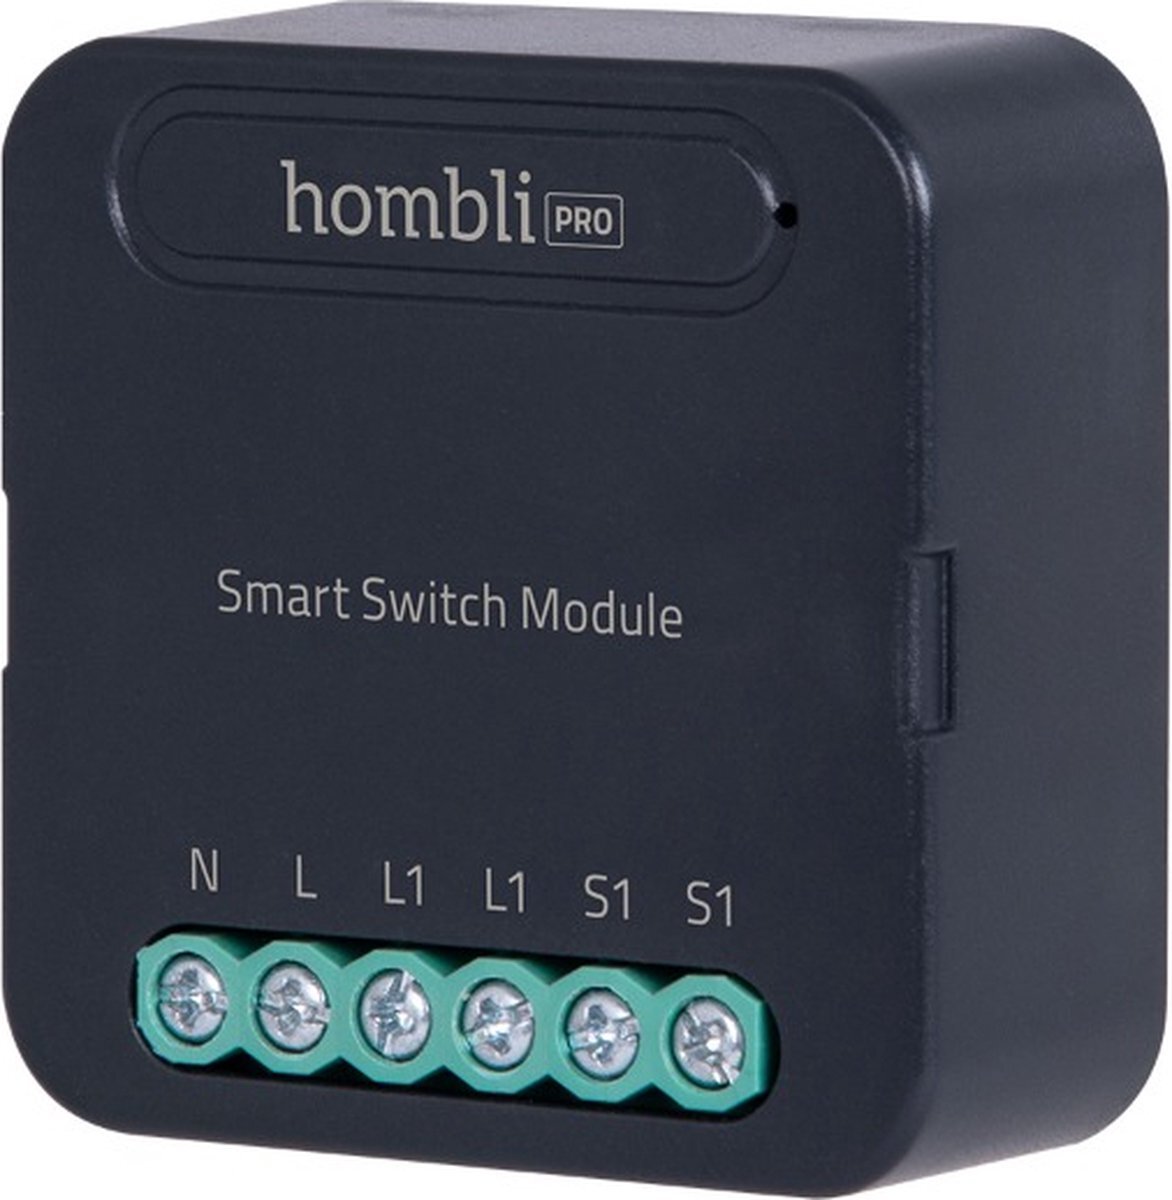 Hombli Smart Switch Module | Retrofit Wifi schakelaar voor enkele wandschakelaar of stopcontact – Bediening via Mobiele App - Geen hub nodig